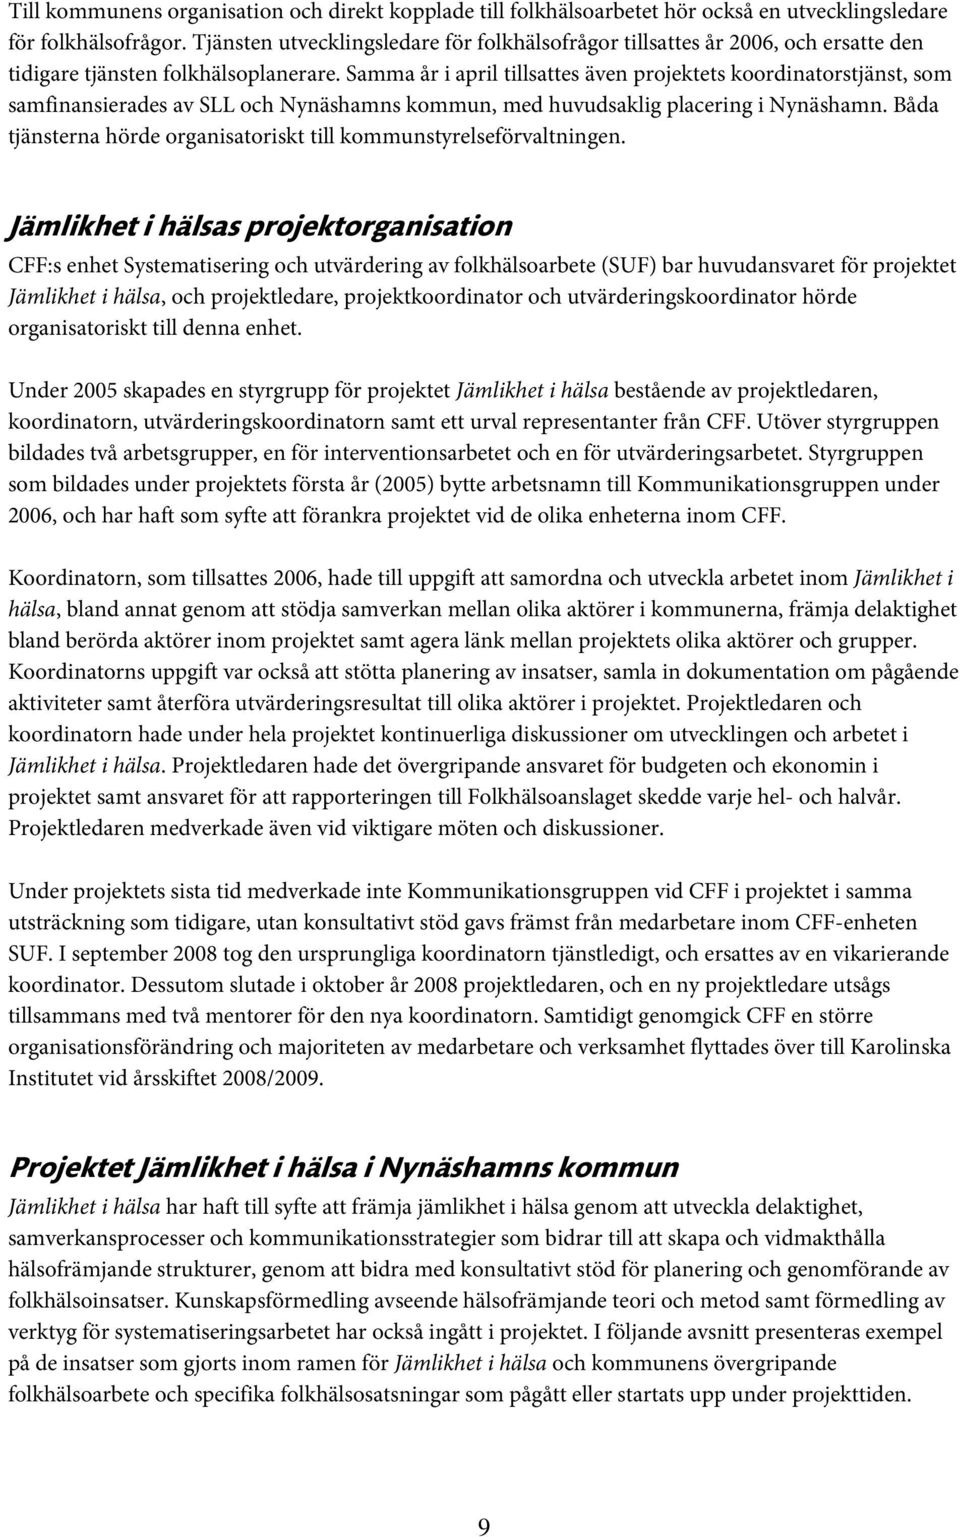 Samma år i april tillsattes även projektets koordinatorstjänst, som samfinansierades av SLL och Nynäshamns kommun, med huvudsaklig placering i Nynäshamn.